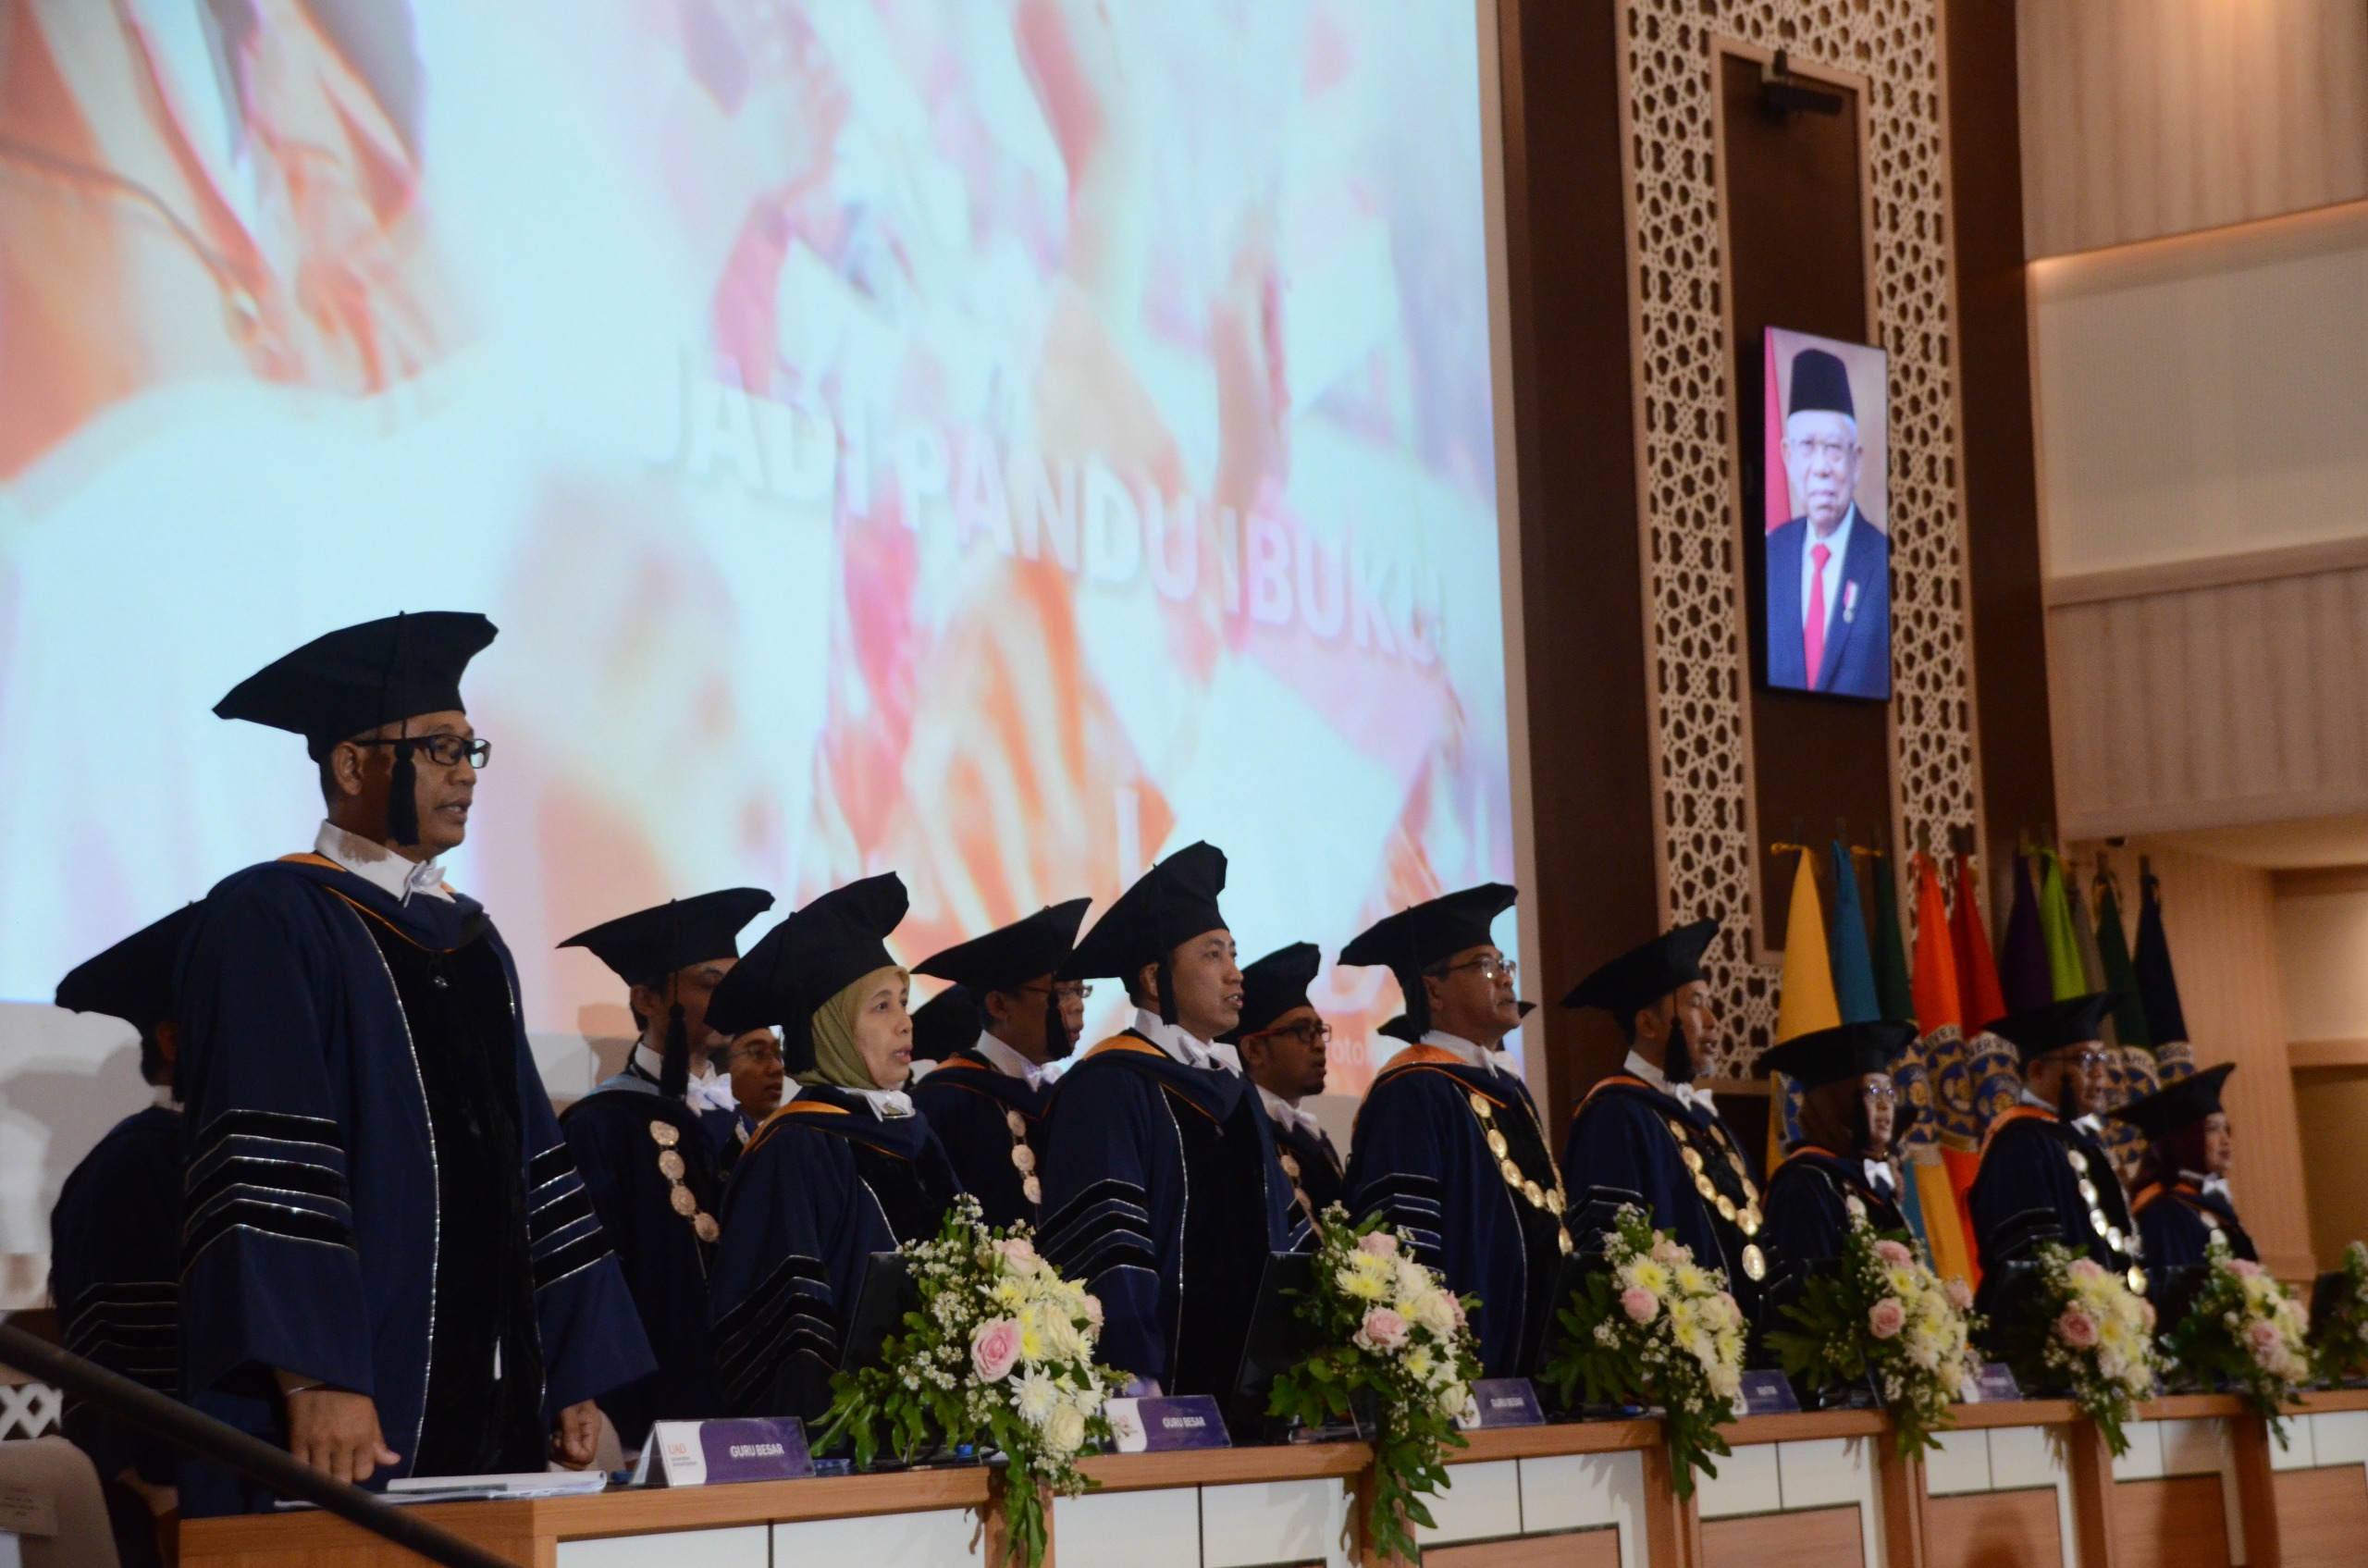 Congratulations on the inauguration of Professor Tole Sutikno